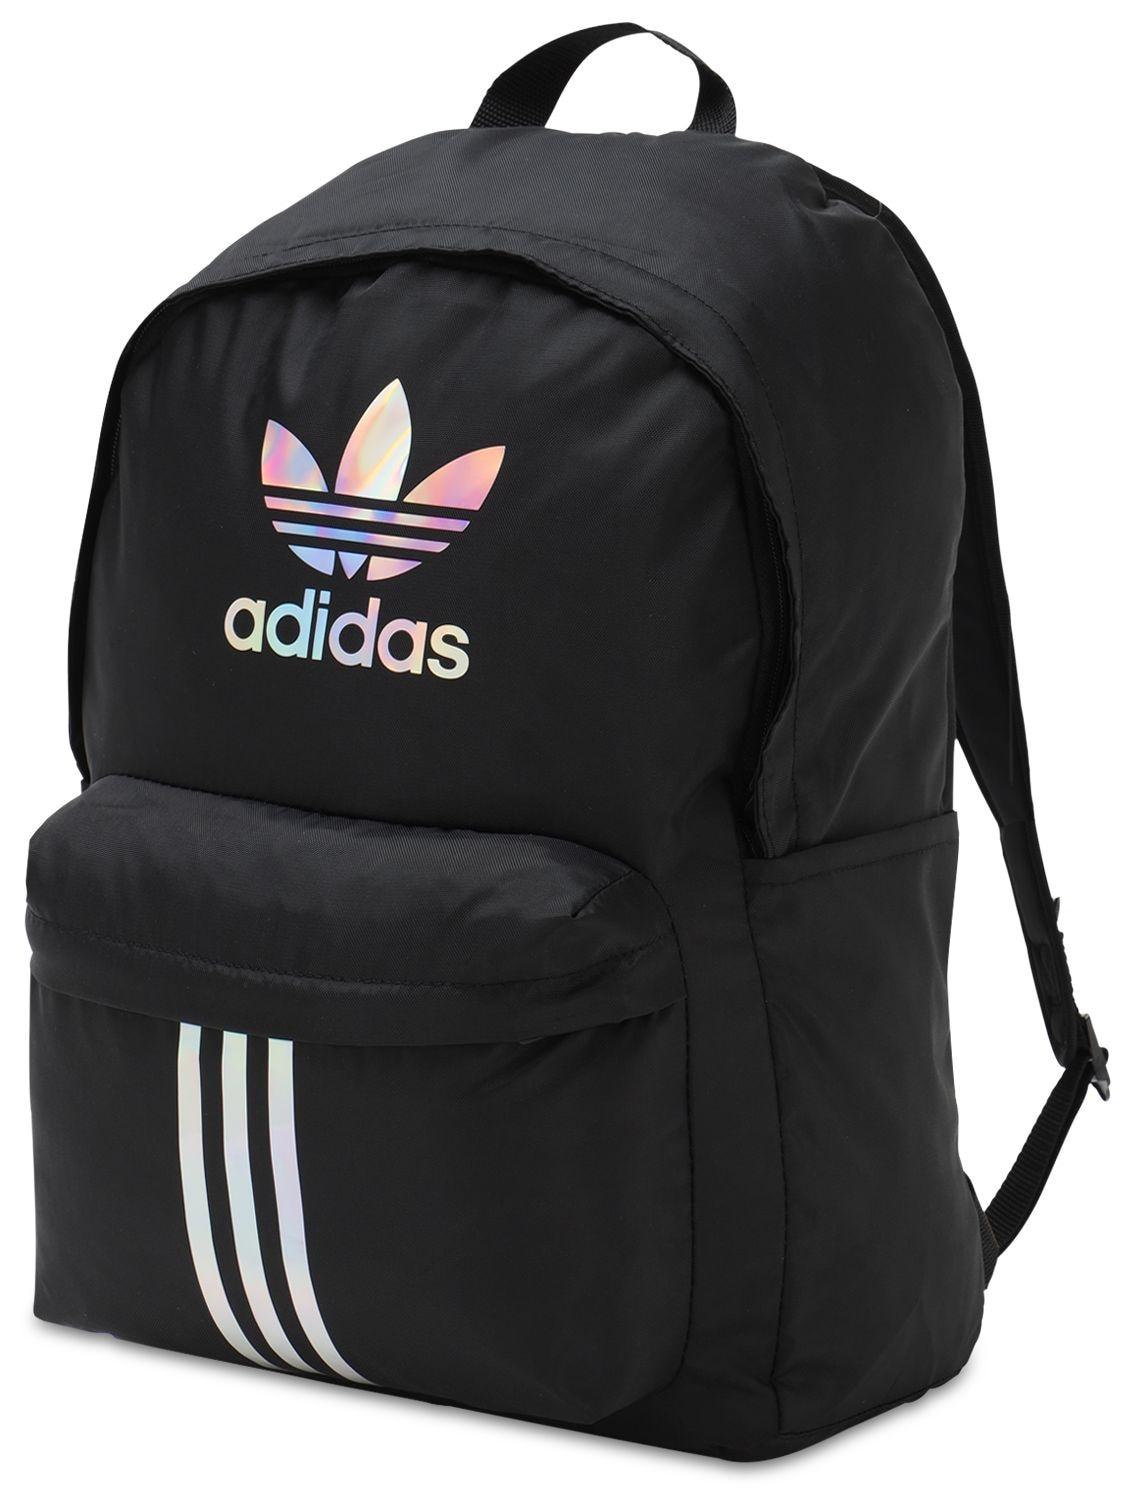 adidas Originals Adicolor Classic Backpack in Black | Lyst